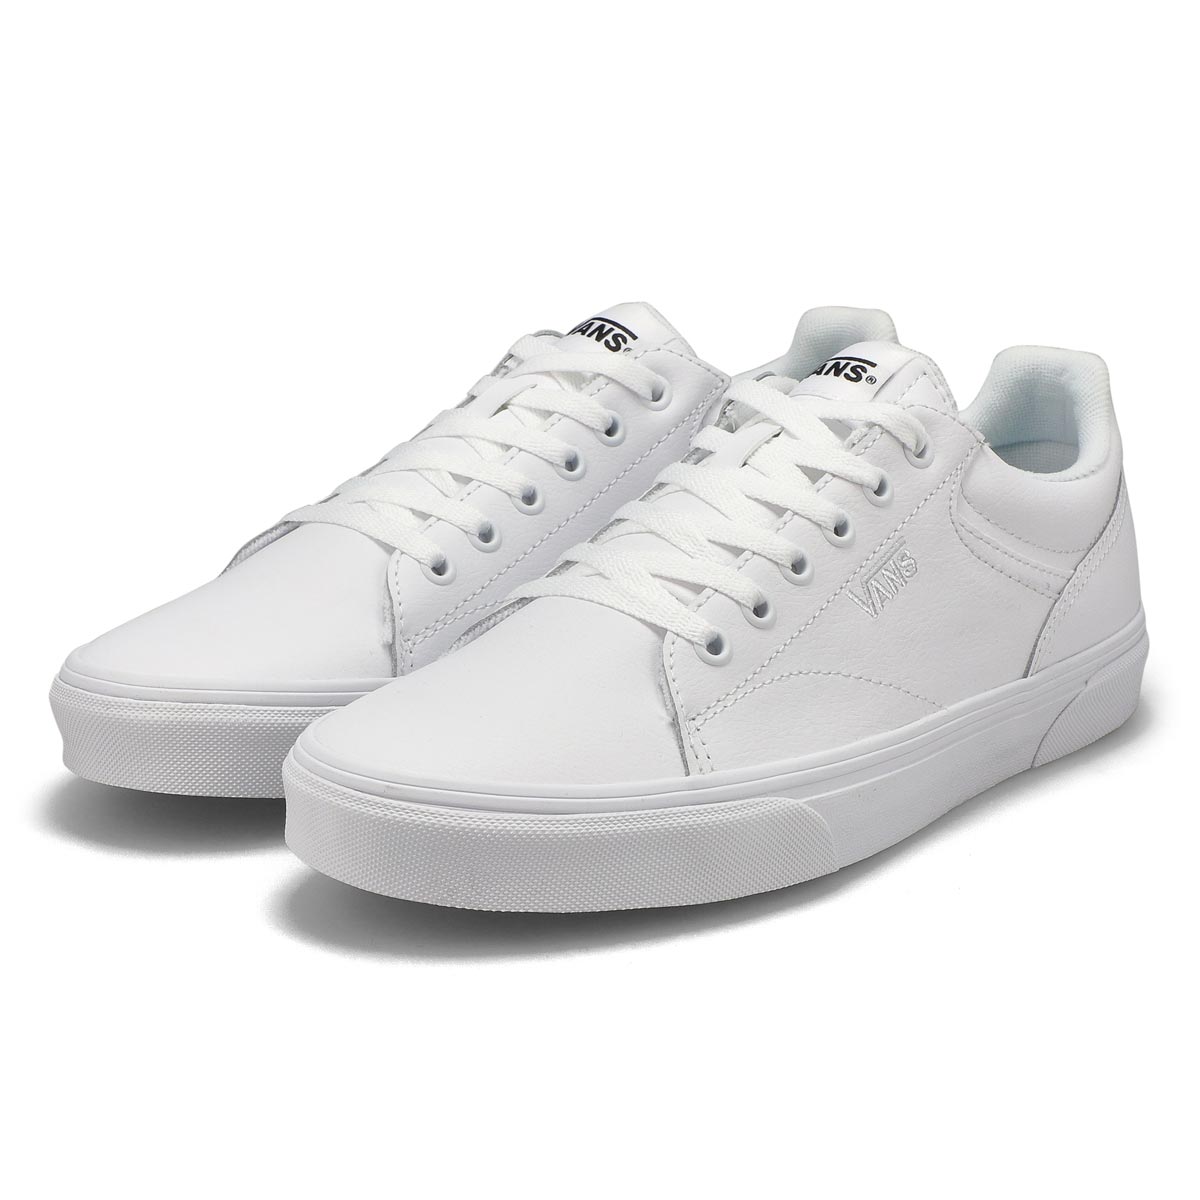 Vans Men's Seldan Sneaker - Black/White | SoftMoc.com